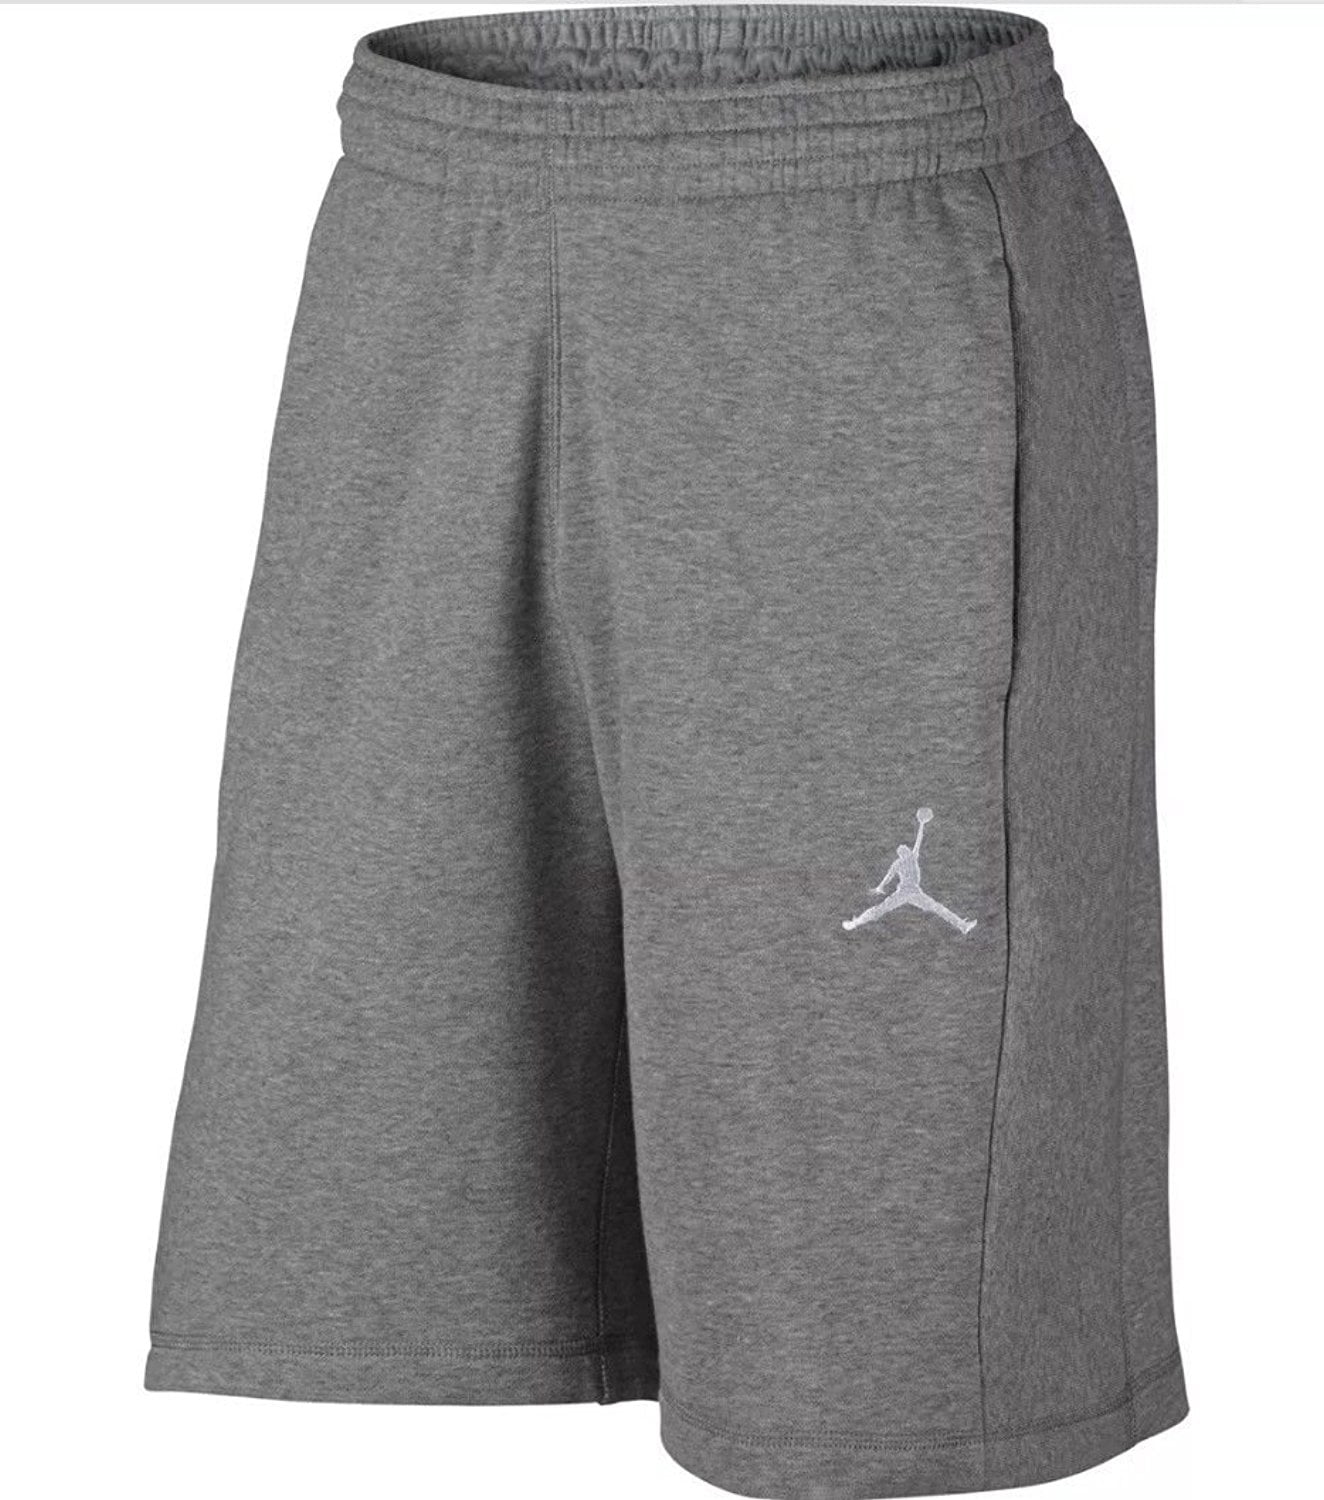 grey jordan shorts mens